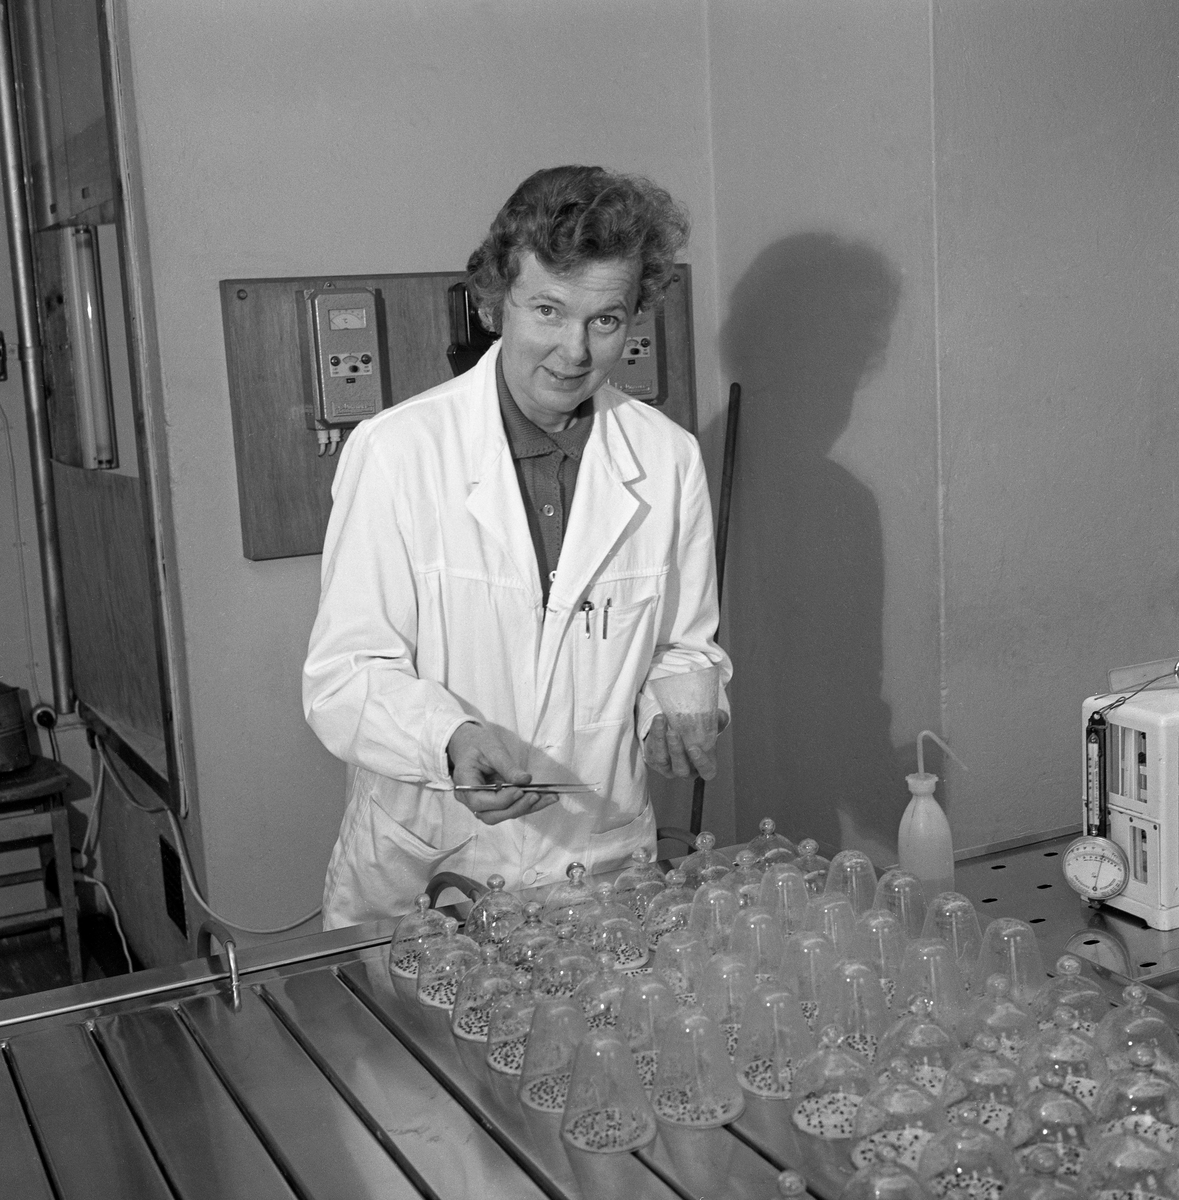 Laborant Gerd W. Sæther (1921-2017) i arbeid ved Skogfrøverkets laboratorium.  Fru Sæther ble ansatt som laborant ved Skogfrøverket i 1961, mens Charles D. Kohmann fortsatt var bestyrer.  Hun deltok ivrig i internasjonalt faglig samarbeid i organisasjonen ISTA (International Seed Testing Association), og drev laboratoriet på en samvittighetsfull måte fram til hun ble pensjonist.  Gerd Sæther lærte sjøl opp sin assistent, Aggi Høstmælingen, og sin etterfølger, Aud Jovall.  Dette fotografiet ble tatt i 1967.  Gerd Sæther sto ved et av Skogfrøverkets spirebord med lokk av stål og spalteåpninger ned mot et underliggende, temperert vannbad.  Over disse spaltene lå det oblater med veker, som var stukket gjennom spaltene og ned i vannet.  Kapillæreffekten bidro til å holde oblatene fuktige.  På dem lå det et tilfeldig utvalg, men et bestemt antall, frø under glassklokker.  Disse skulle ligge et bestemt tidsrom på spirebordet i laboratoriet, slik at man kunne antyde en spireprosent for frøpartiet.  Dette var et viktig ledd i Skogfrøverkets kvalitetssikringsarbeid.